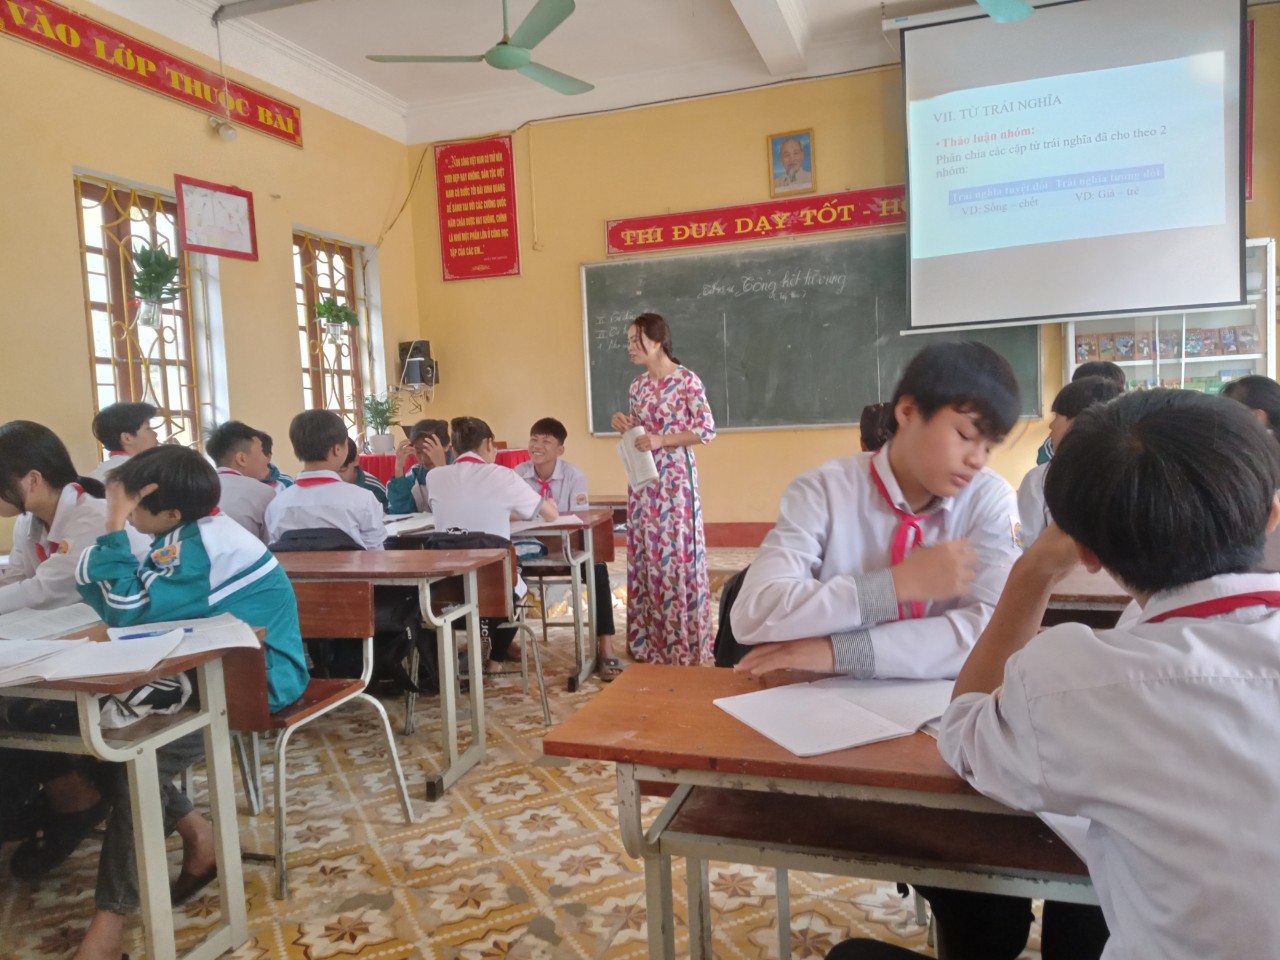 Ngôi trường vùng cao hạnh phúc | baotintuc.vn